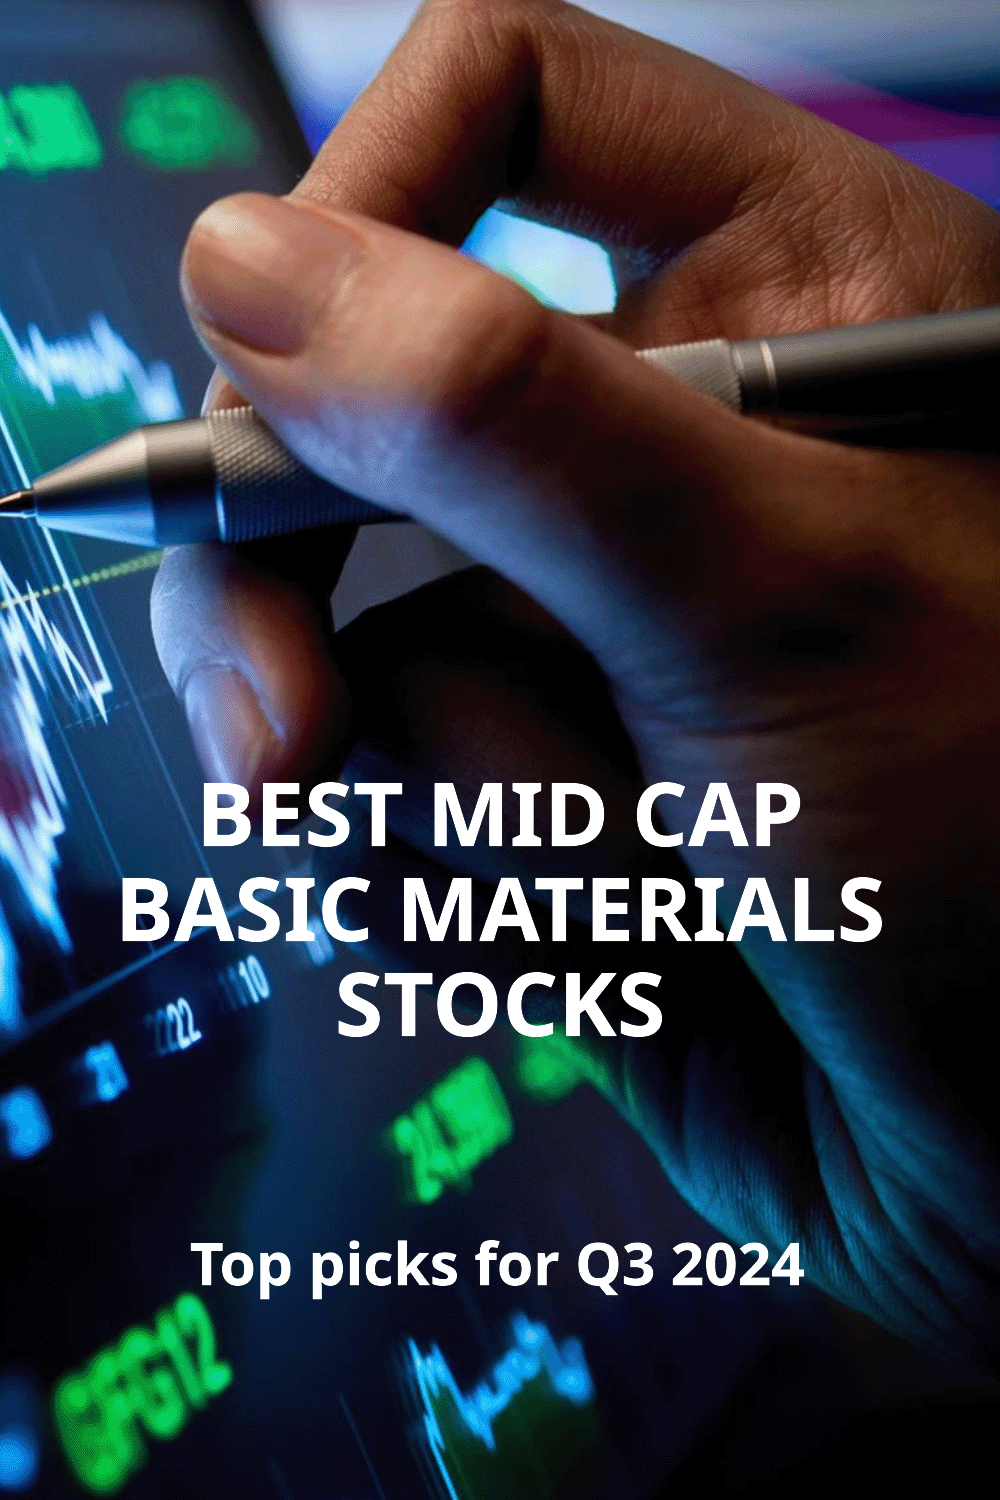 Best mid-cap basic materials stocks to invest in Q3 2024